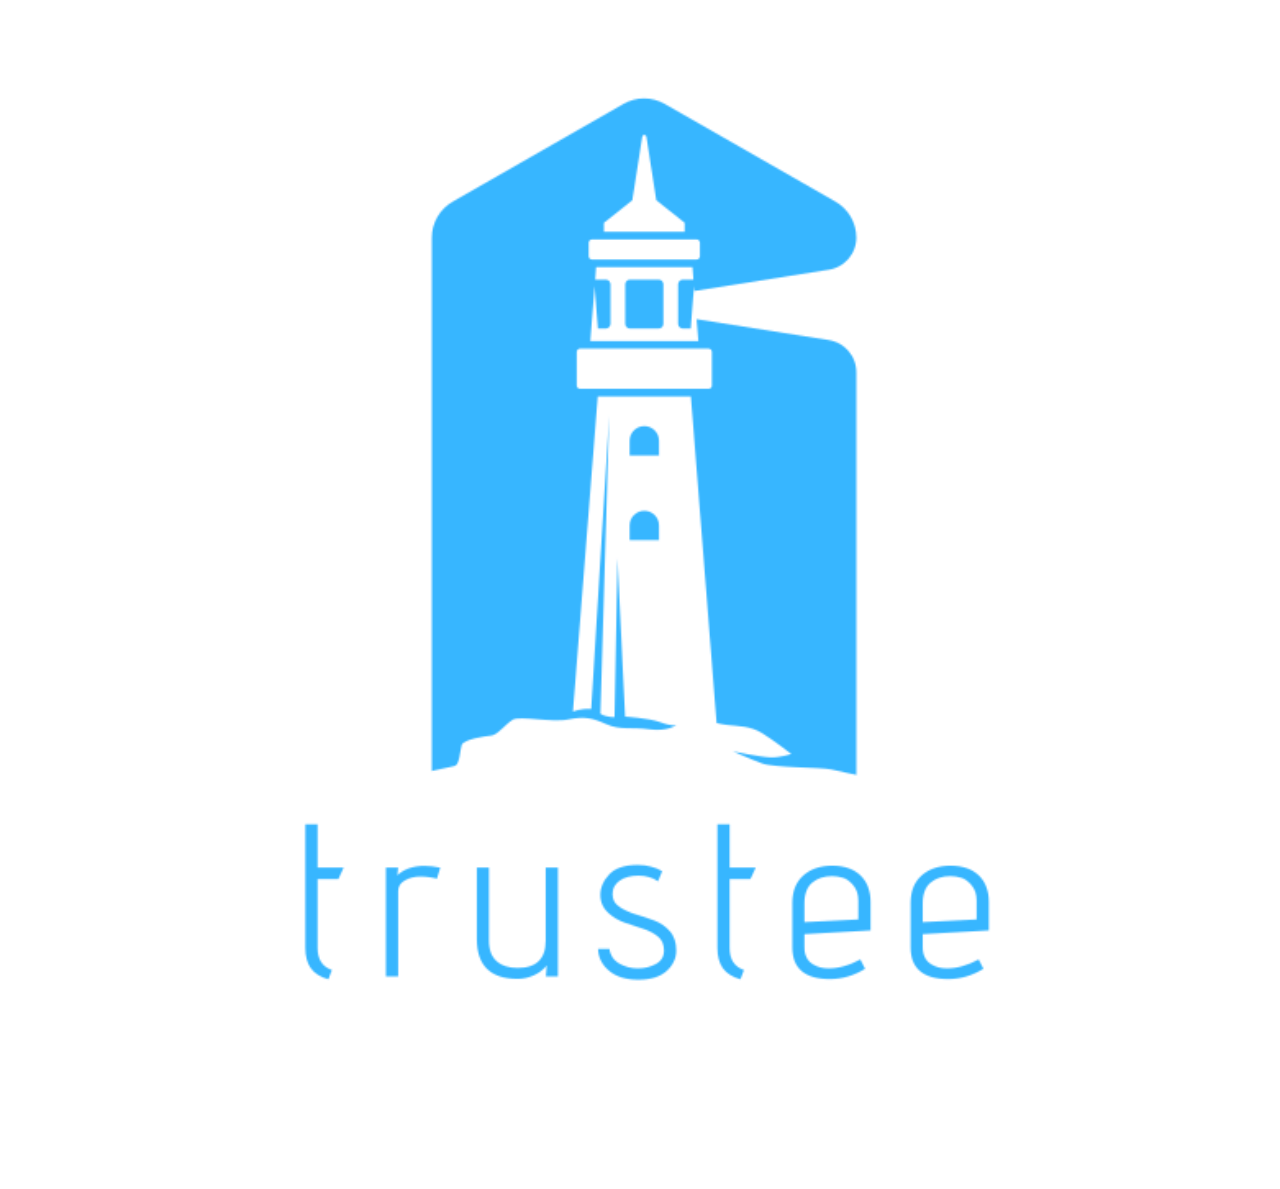 trustee saint jean cap ferrat's logo